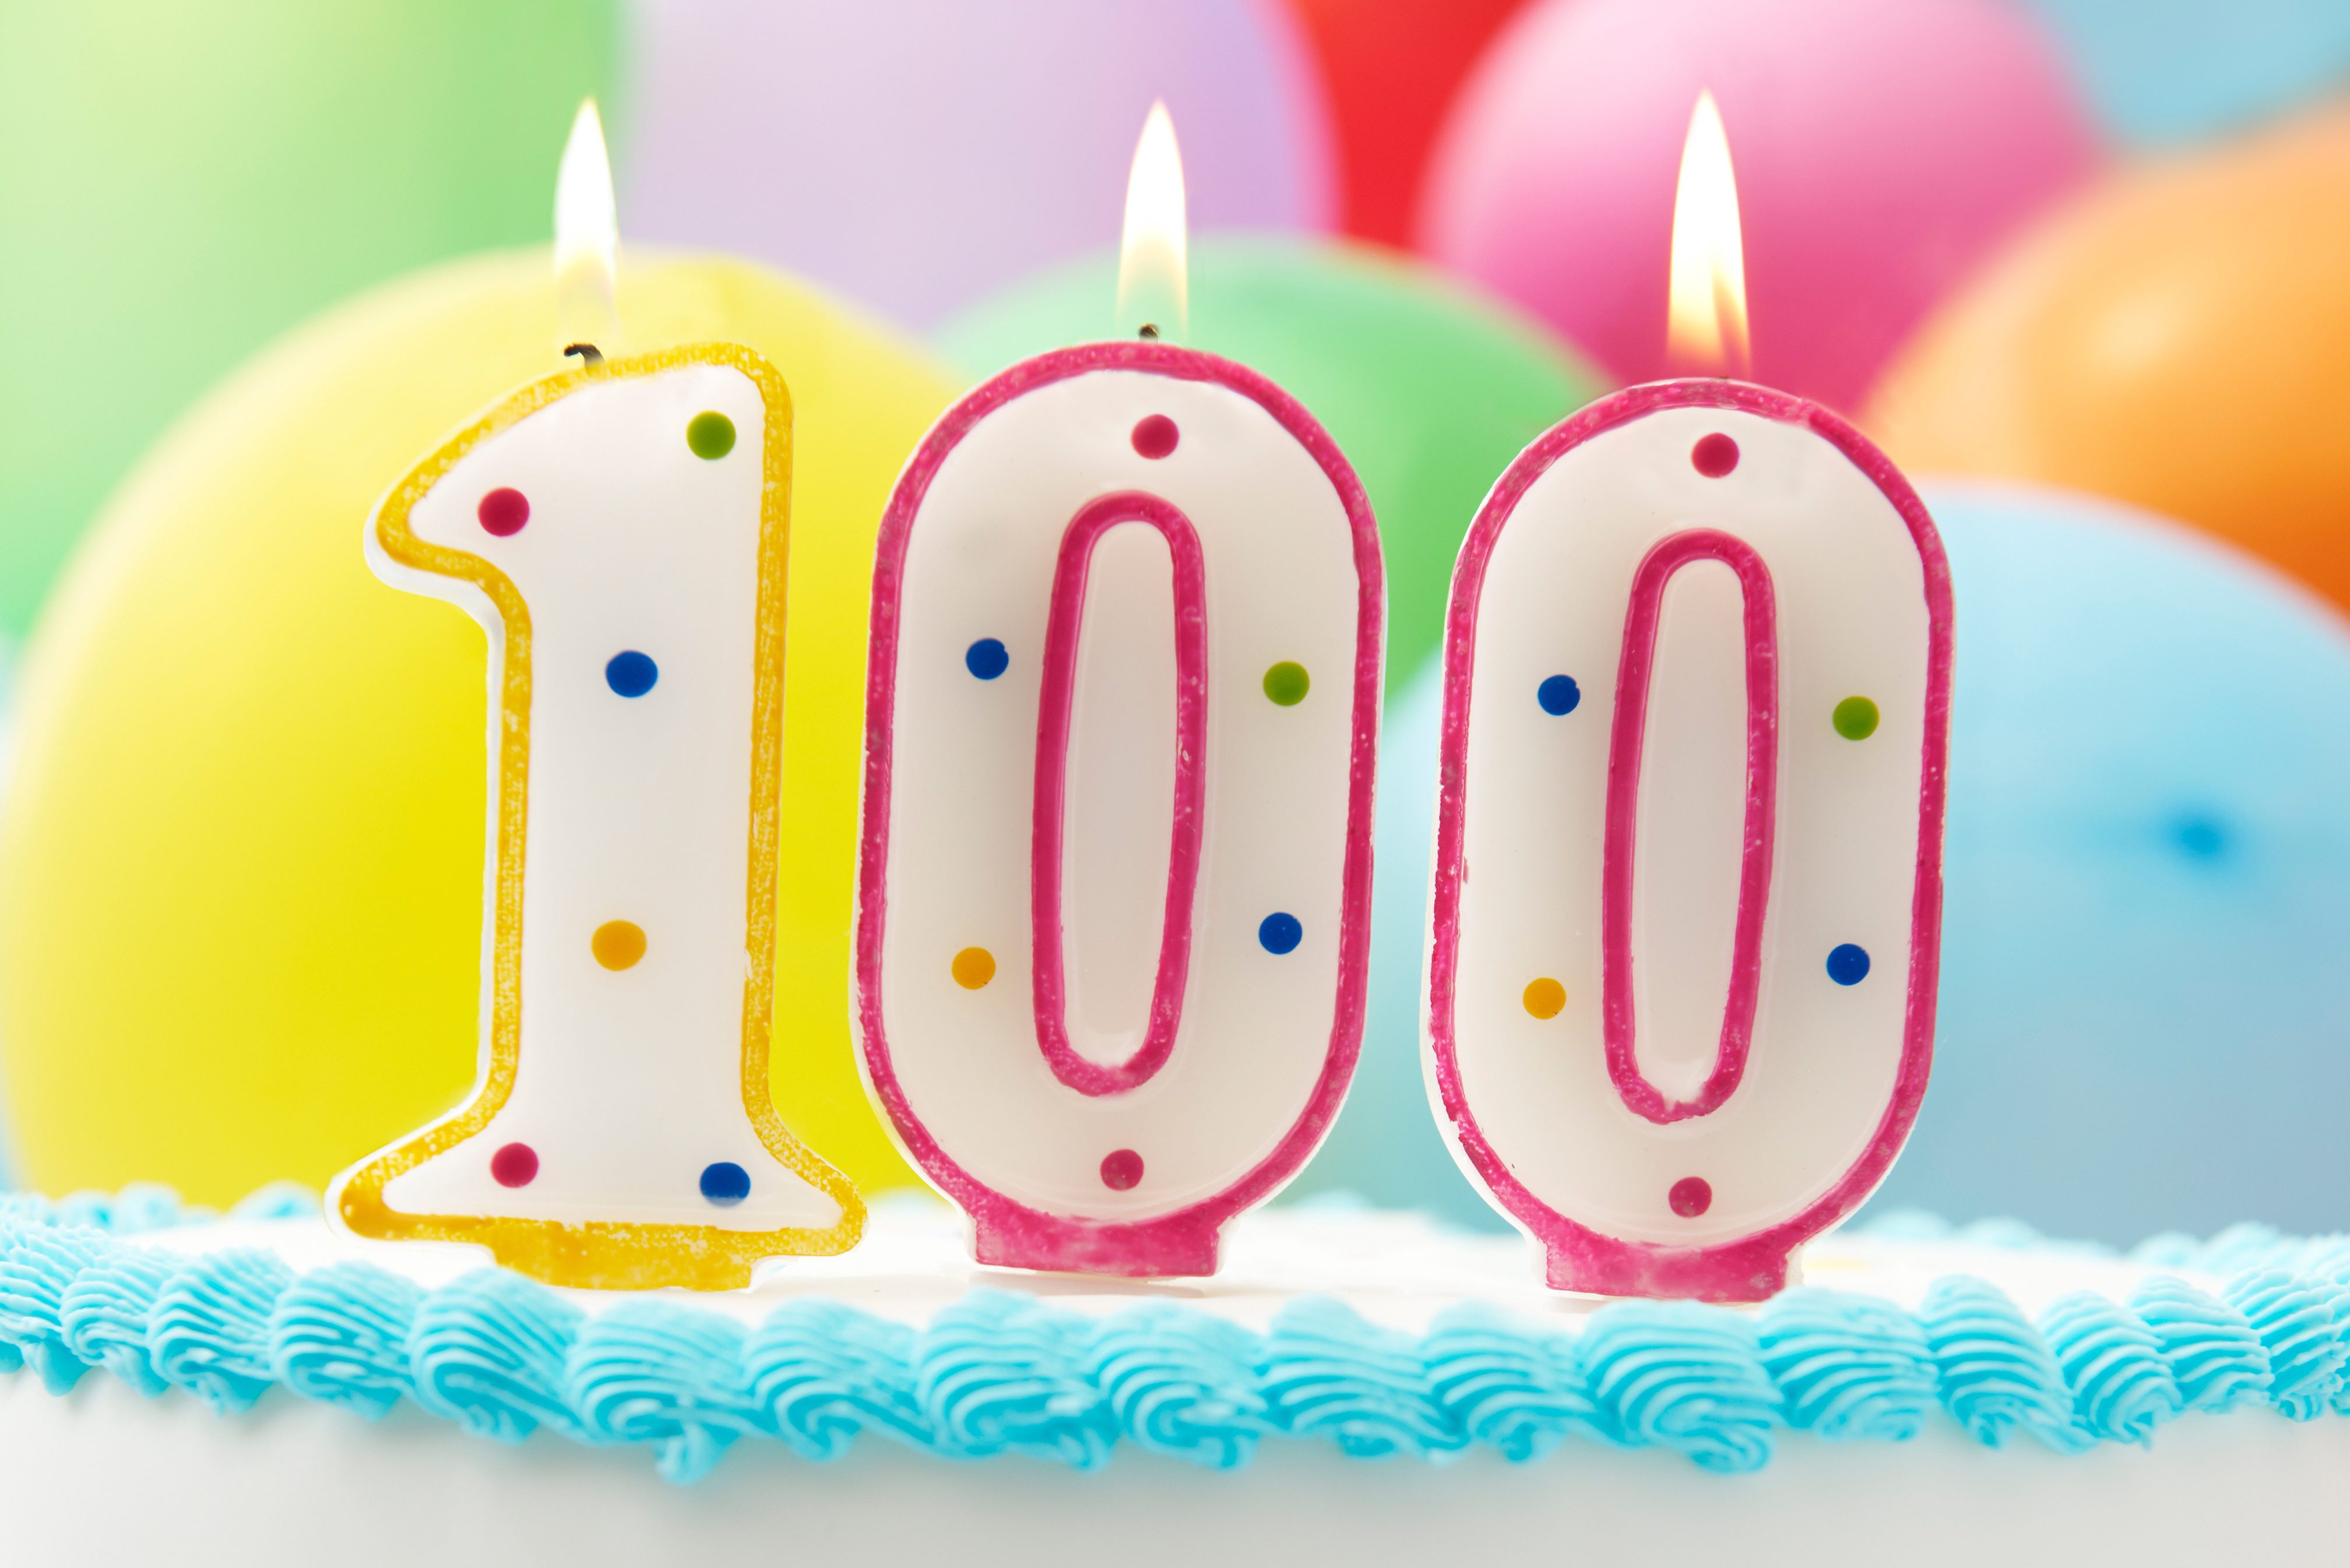 Cake Celebrating 100th Birthday